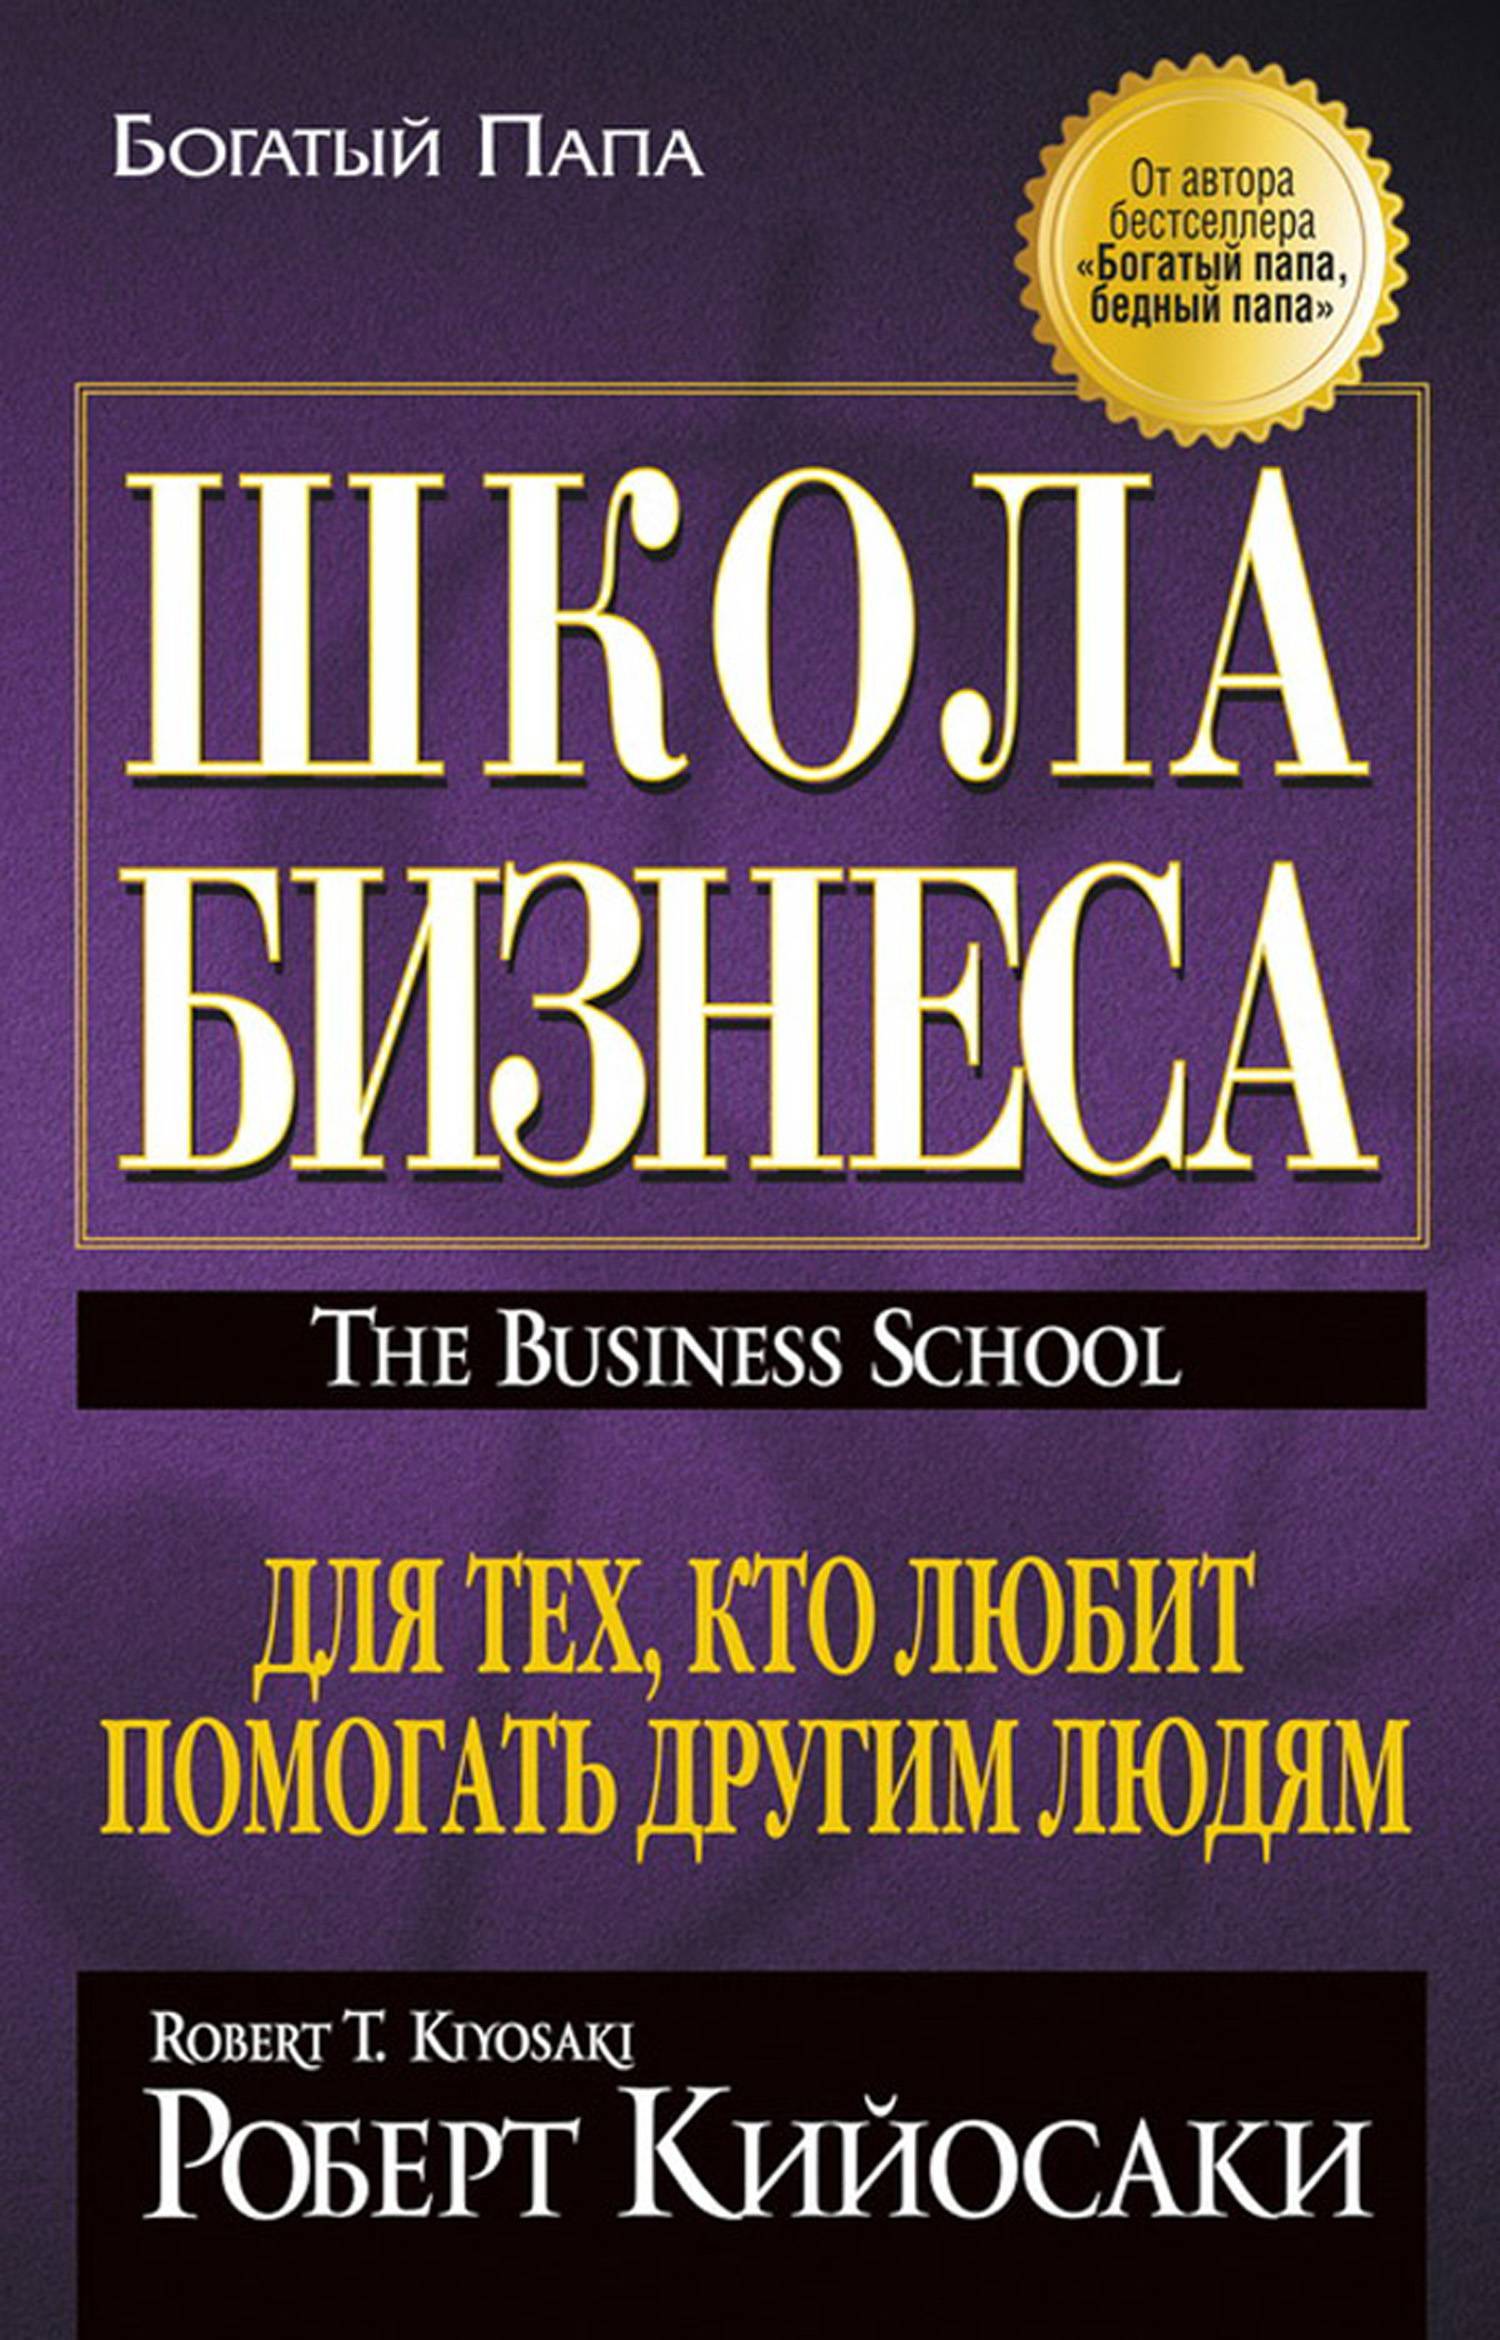 Книга автор бизнеса. Книги.